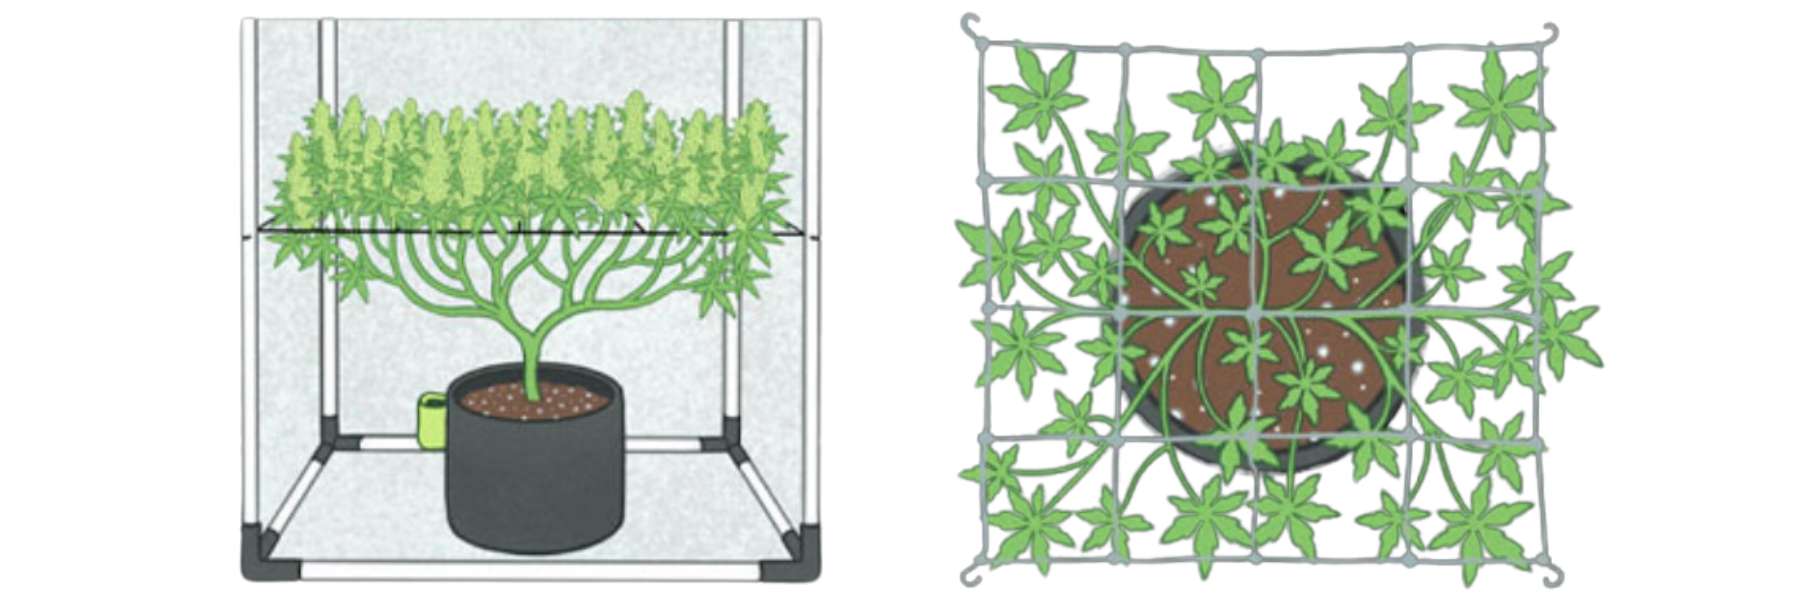 Bild mit Ranknetz, gefüllt mit Pflanzenspitzen, von oben und von der Seite abgebildet